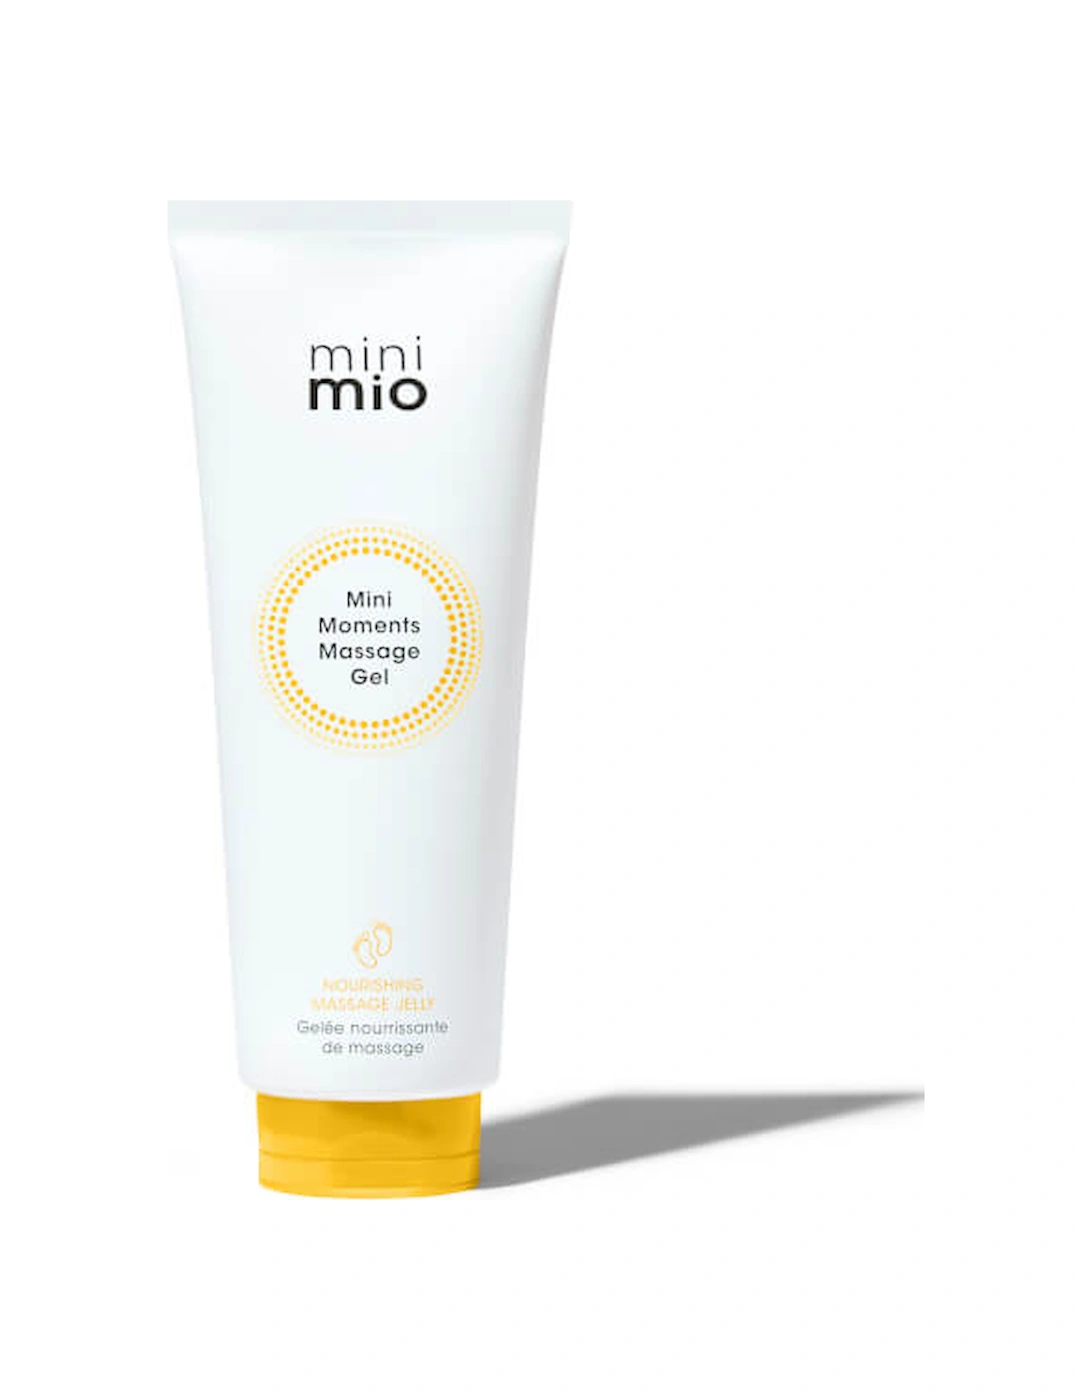 Mini Mio Mini Moments Massage Gel 100ml, 2 of 1